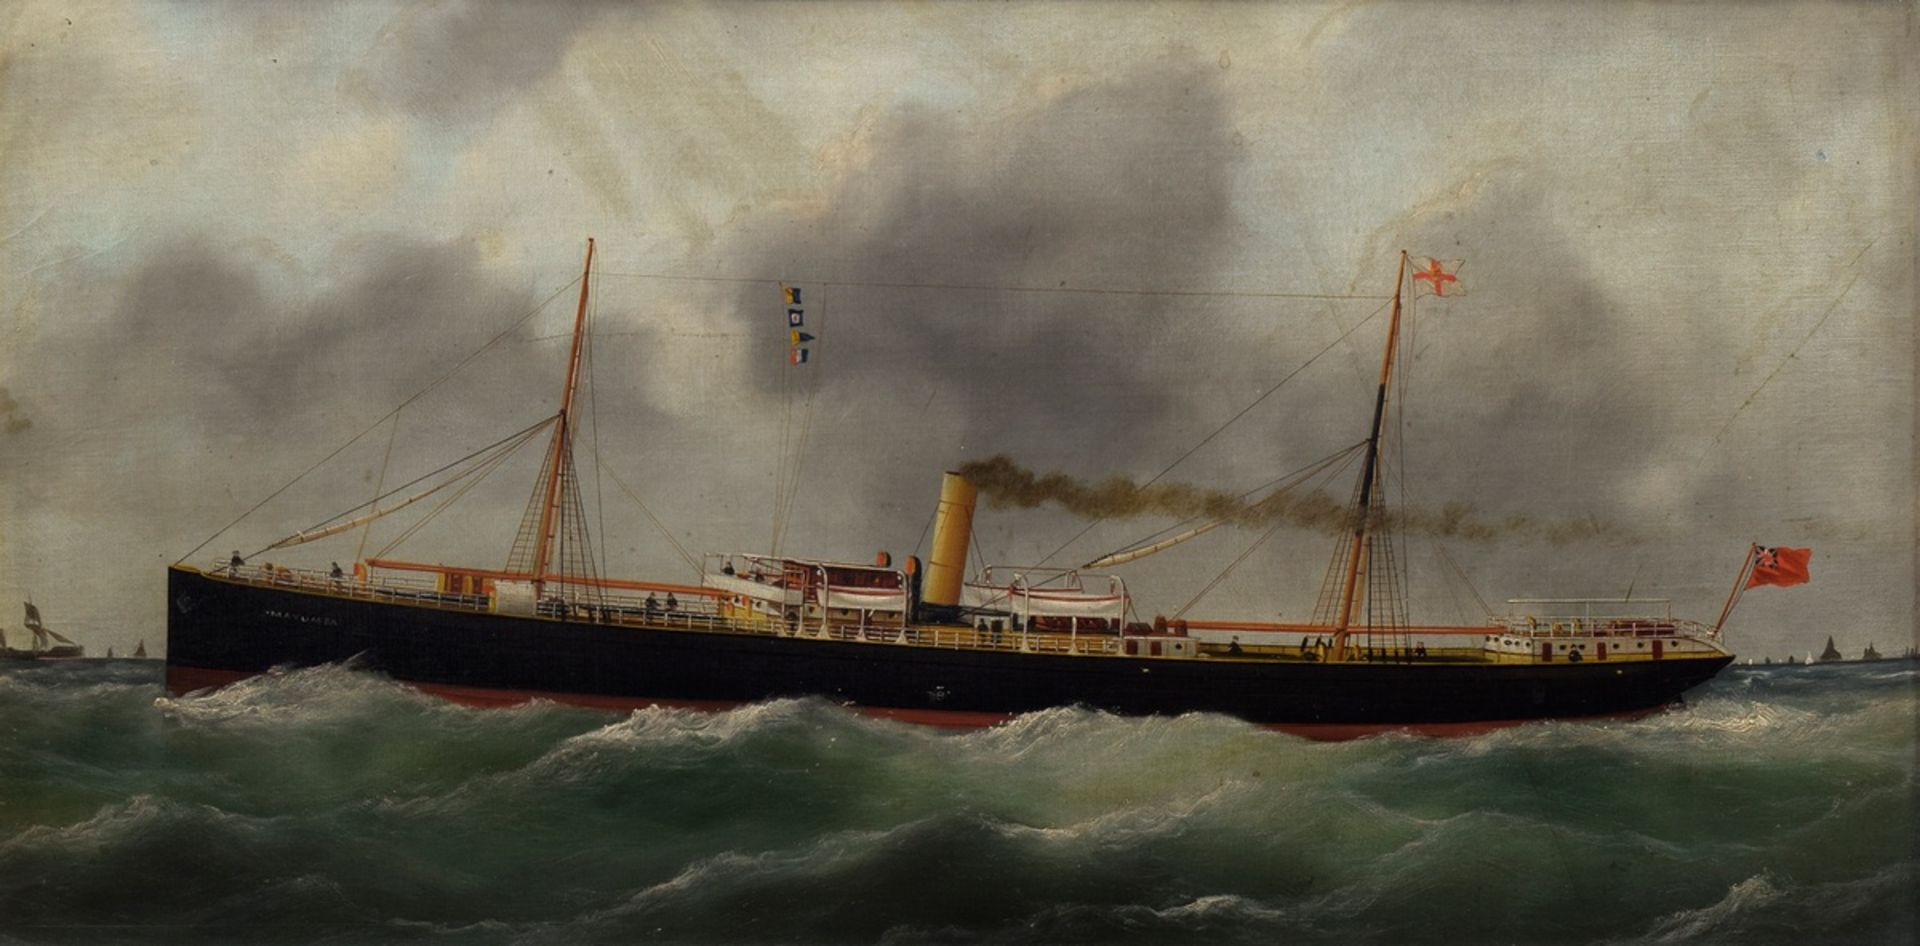 Britisches Kapitänsbild "Segeldampfer Mayumba" um 1900, Öl/Leinwand auf Platte montiert, leicht sch